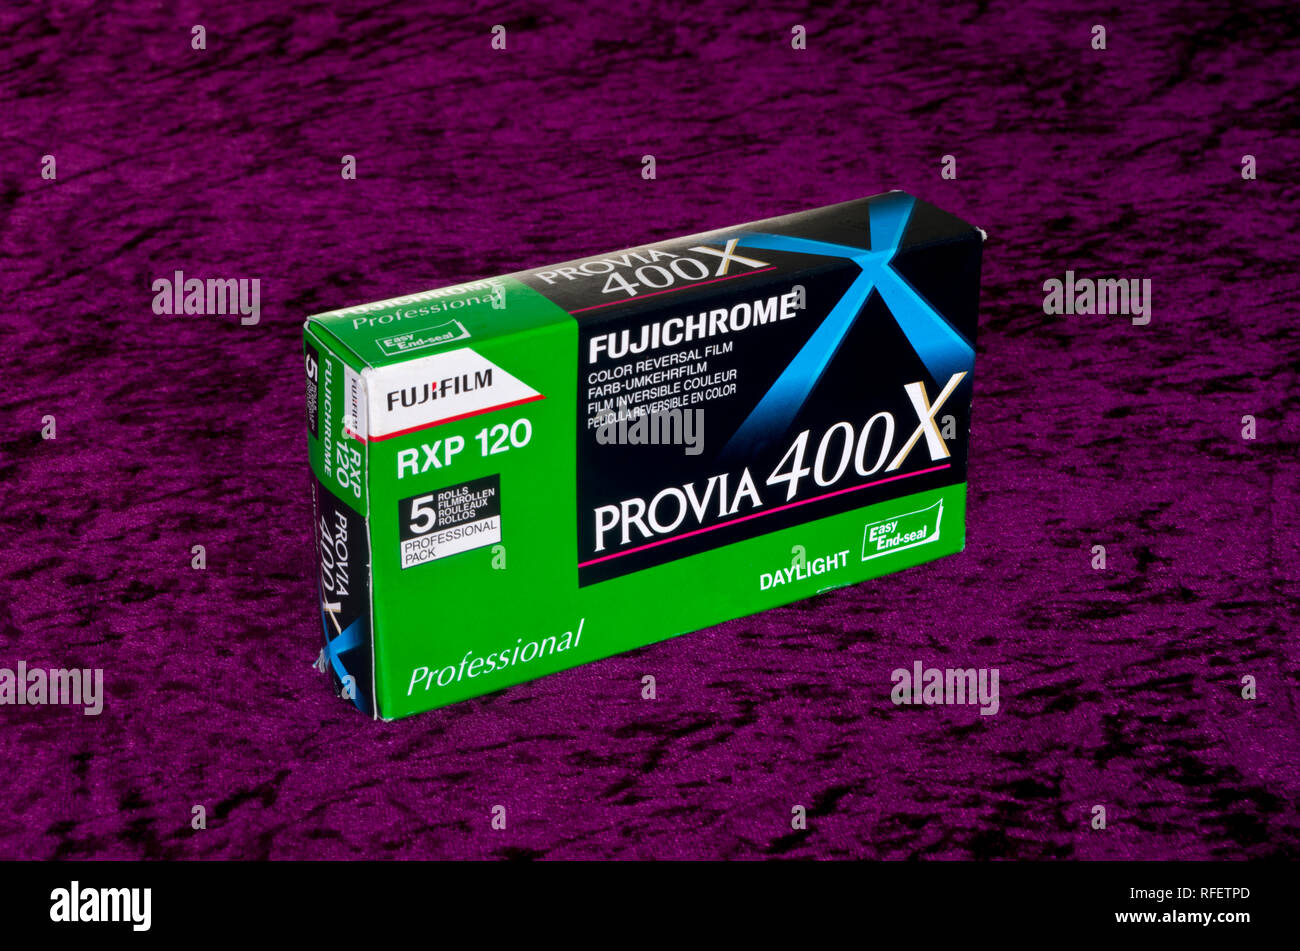 Fuji Fujichrome Fujifilm Professional Provia 400X POSITIVO E6 slitta 120 fotocamera medio formato pellicola Foto Stock